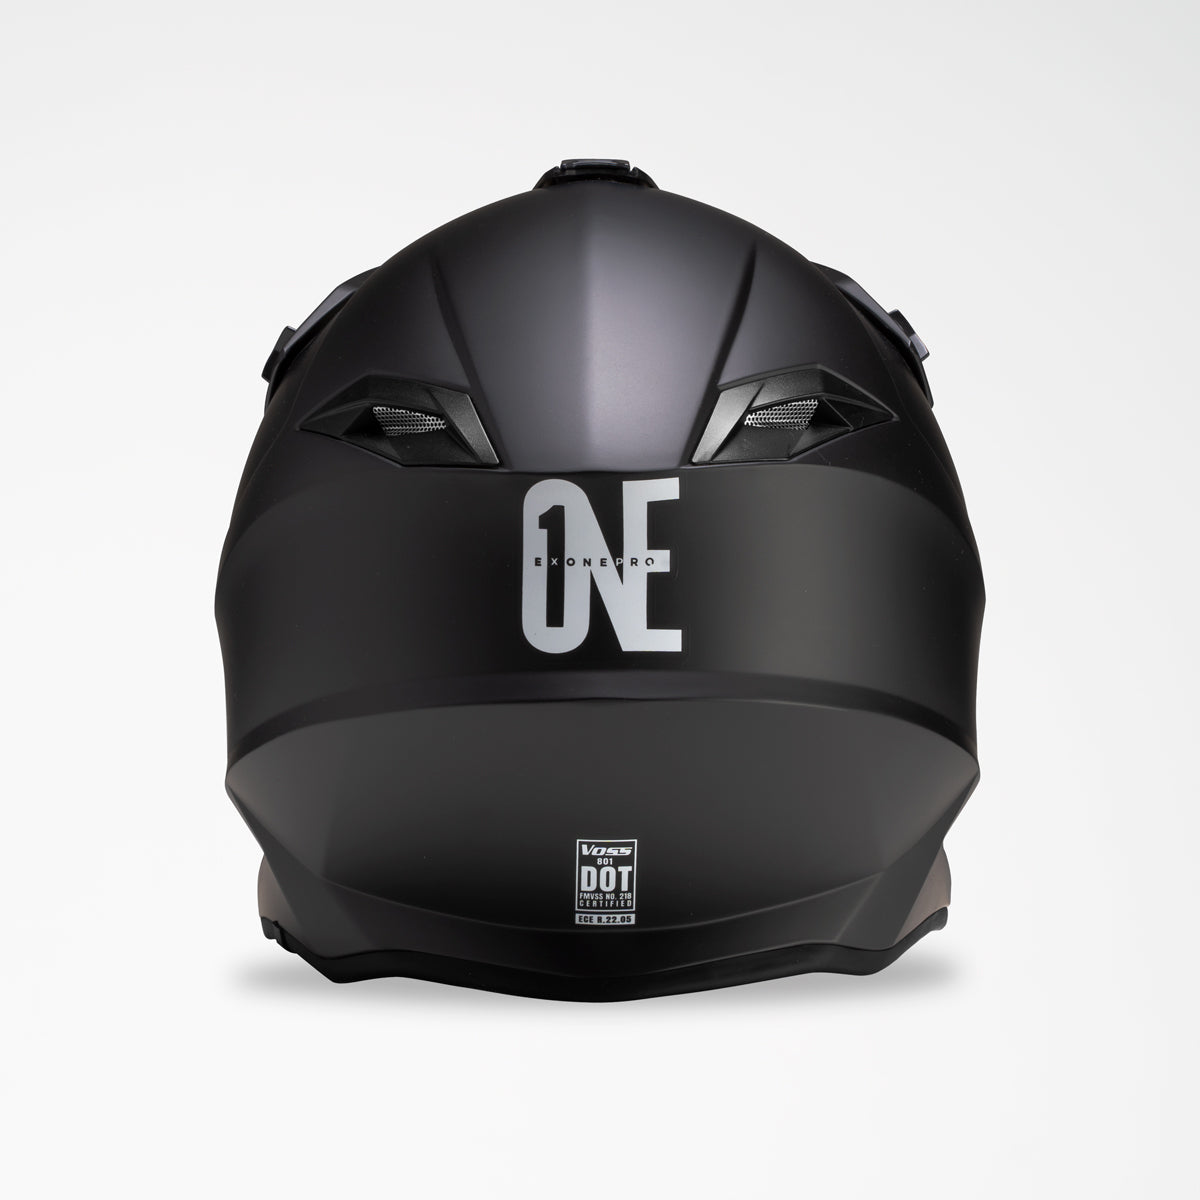 Voss 801 X1 Pro Dirt Blackout Helmet